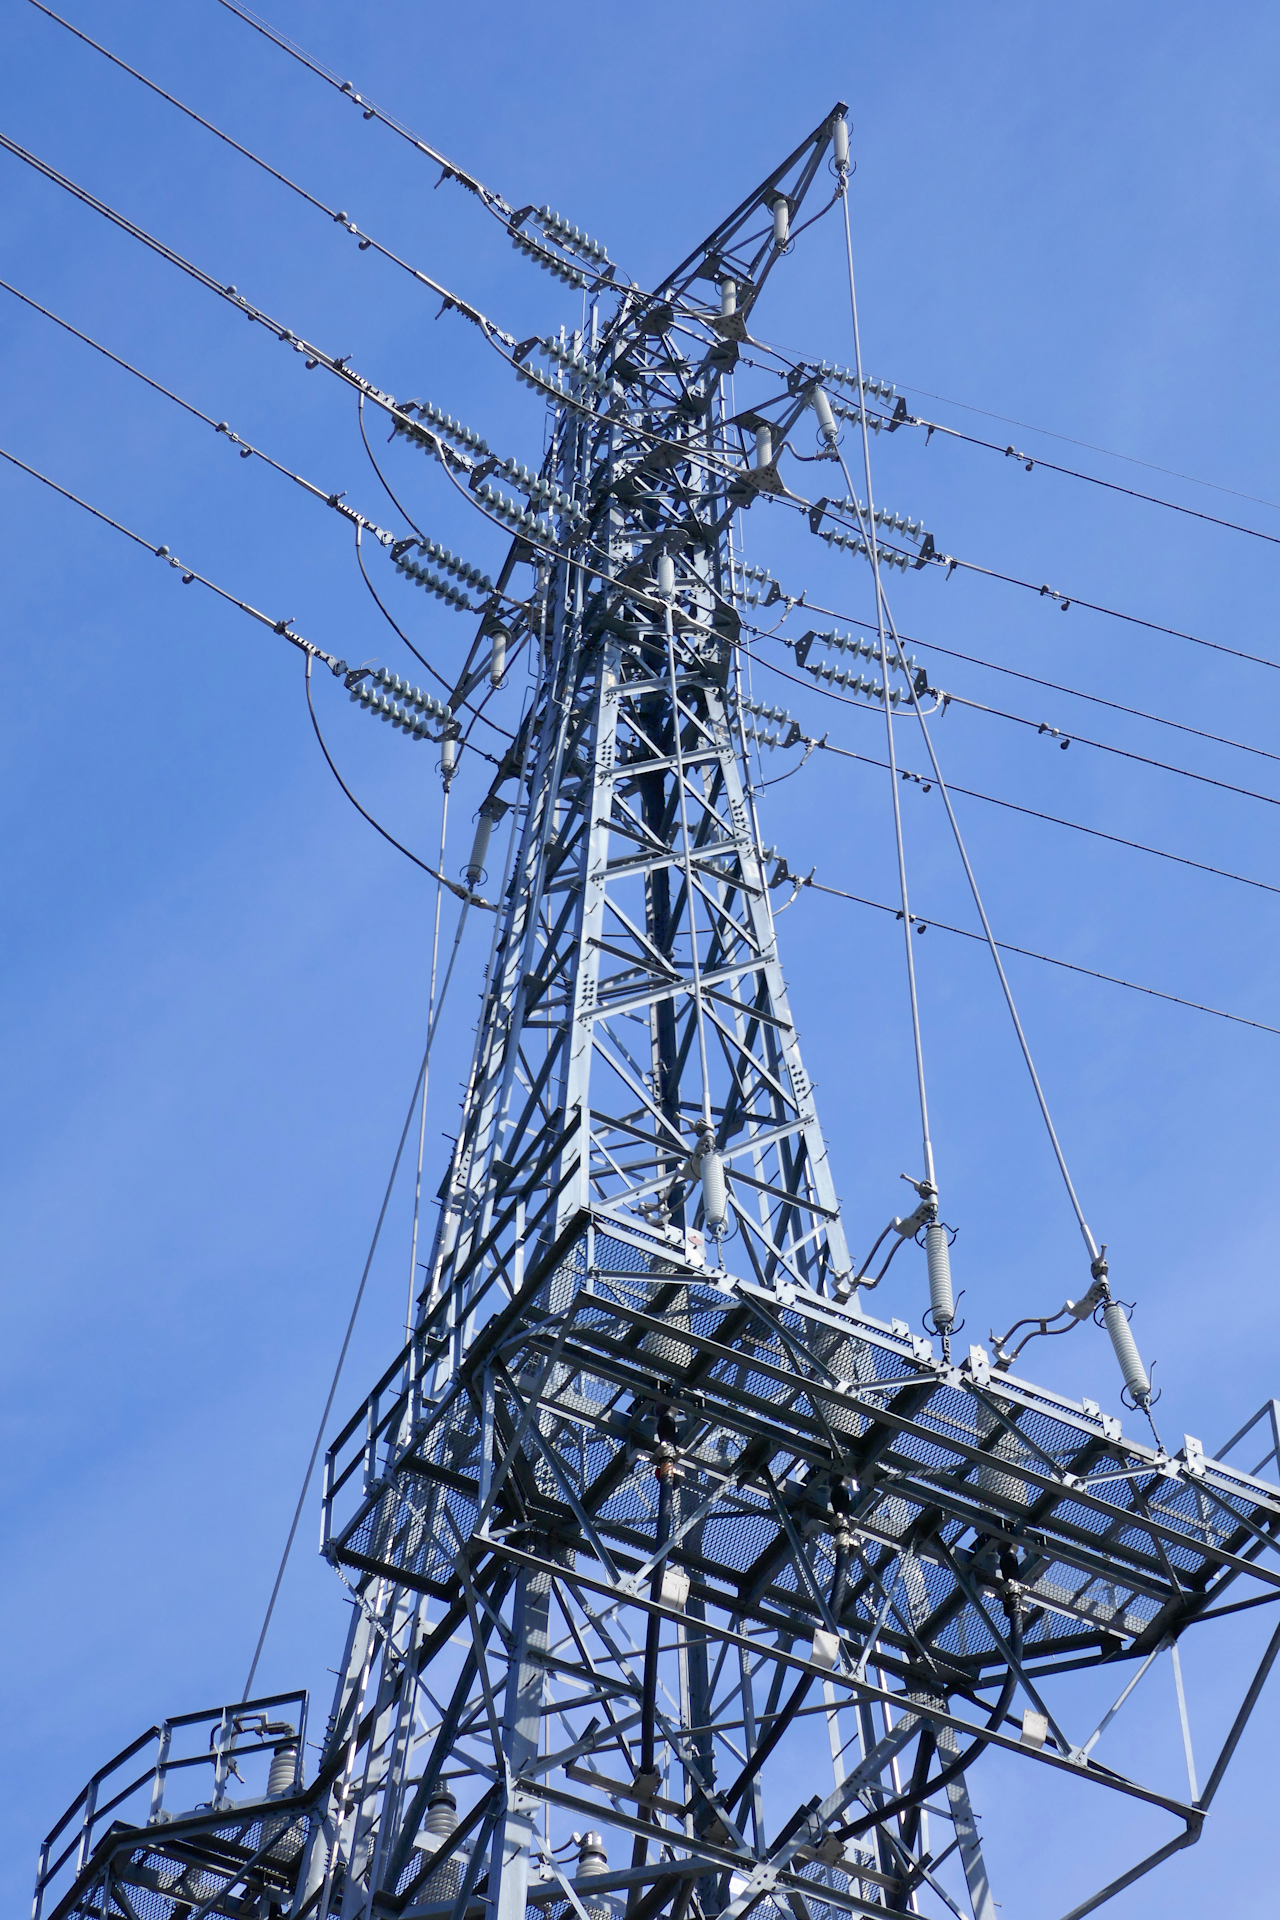 高圧送電用鉄塔を下から見上げて撮影した写真。 青空を背景に鉄塔が伸び、多数の碍子が取り付けられている。